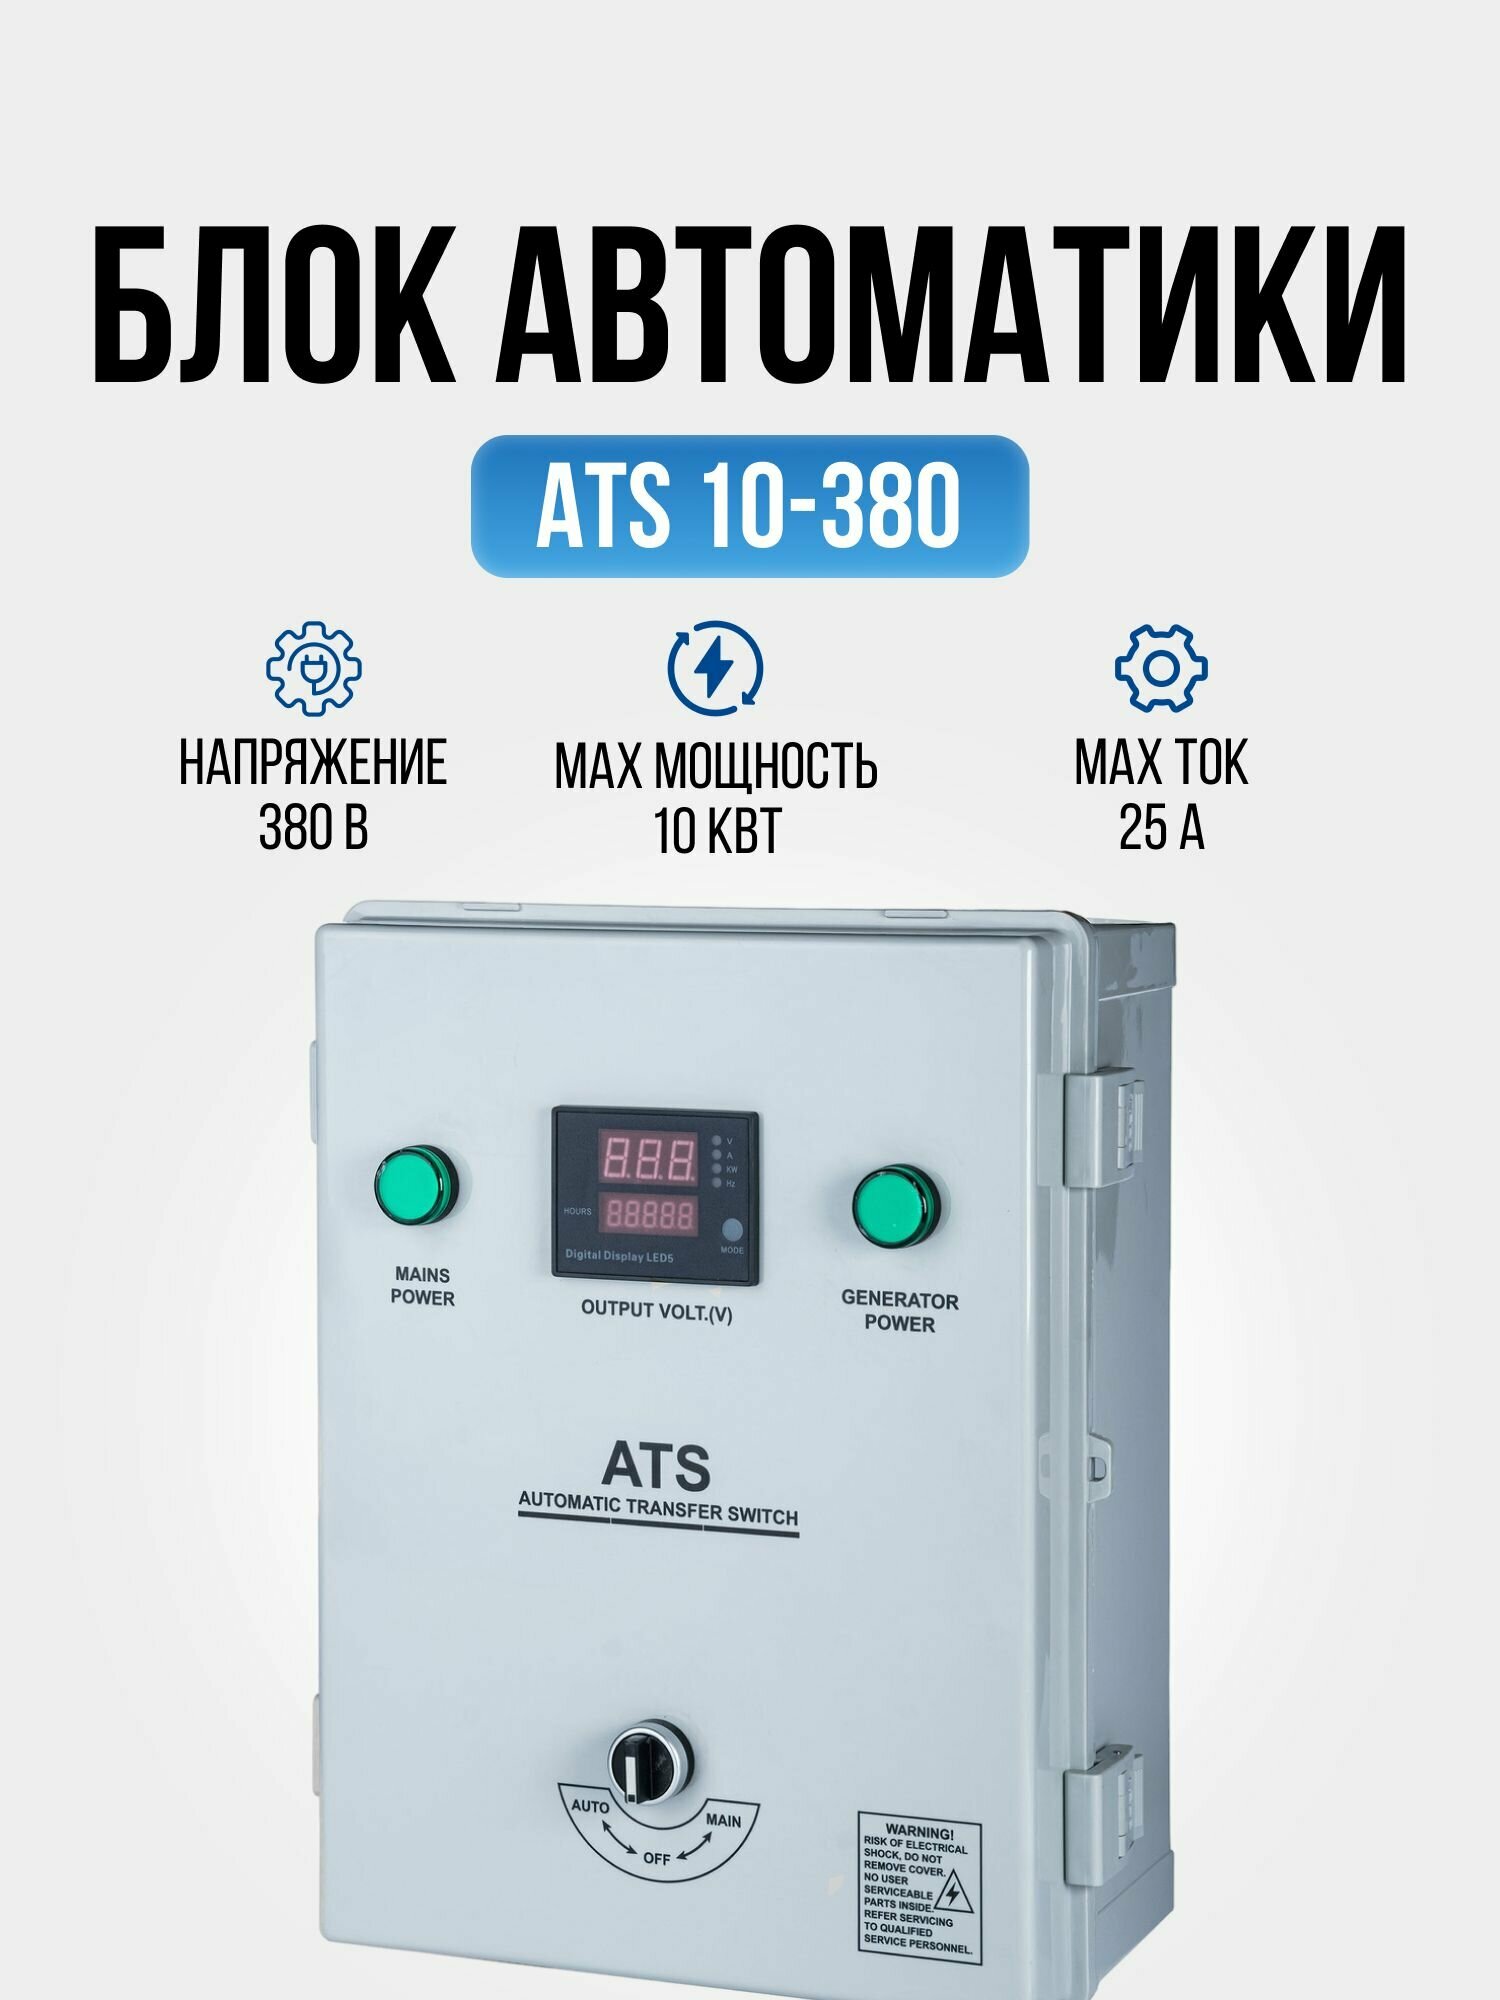 Блок автоматики Hyundai ATS 10-380 устройство автоматического запуска генератора